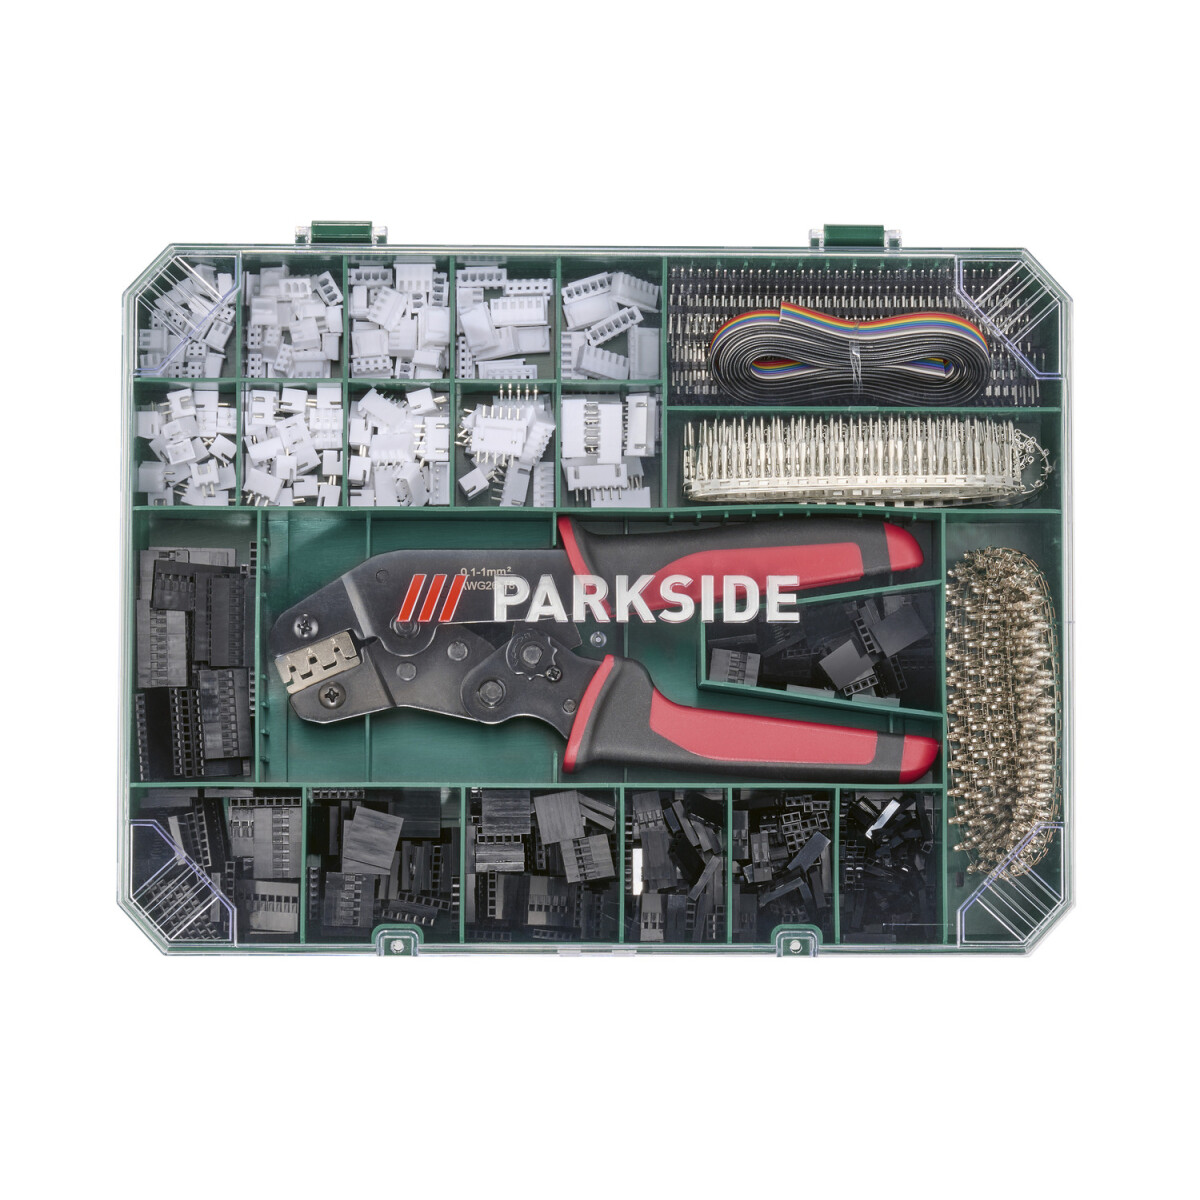 PARKSIDE® Crimpzangen-Set, 2012-teilig - B-Ware Transportschaden  Kosmetisch, 17,99 € | Druckluftgeräte